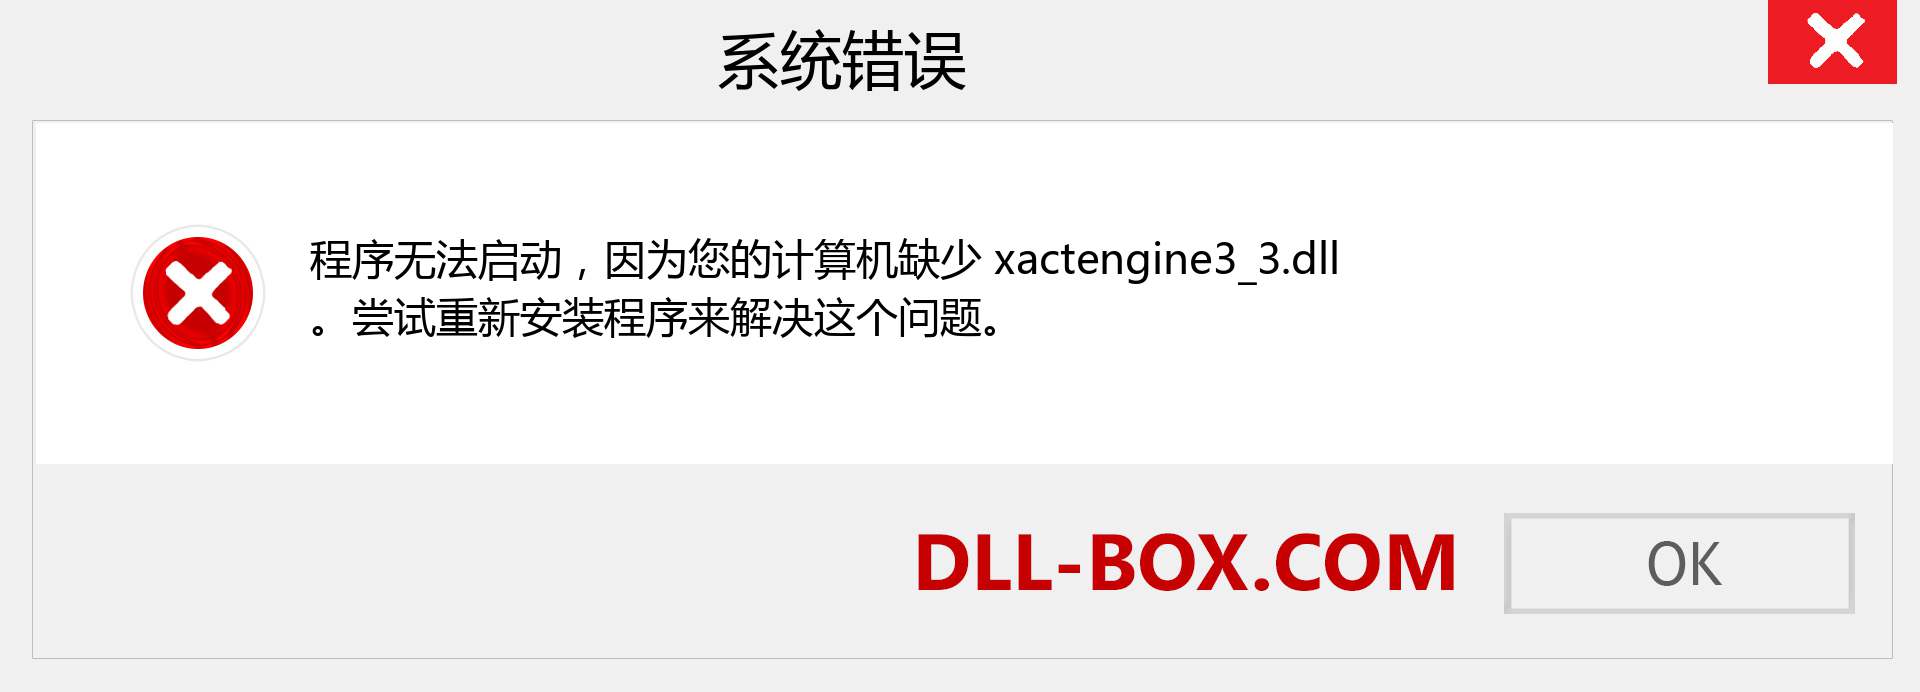 xactengine3_3.dll 文件丢失？。 适用于 Windows 7、8、10 的下载 - 修复 Windows、照片、图像上的 xactengine3_3 dll 丢失错误